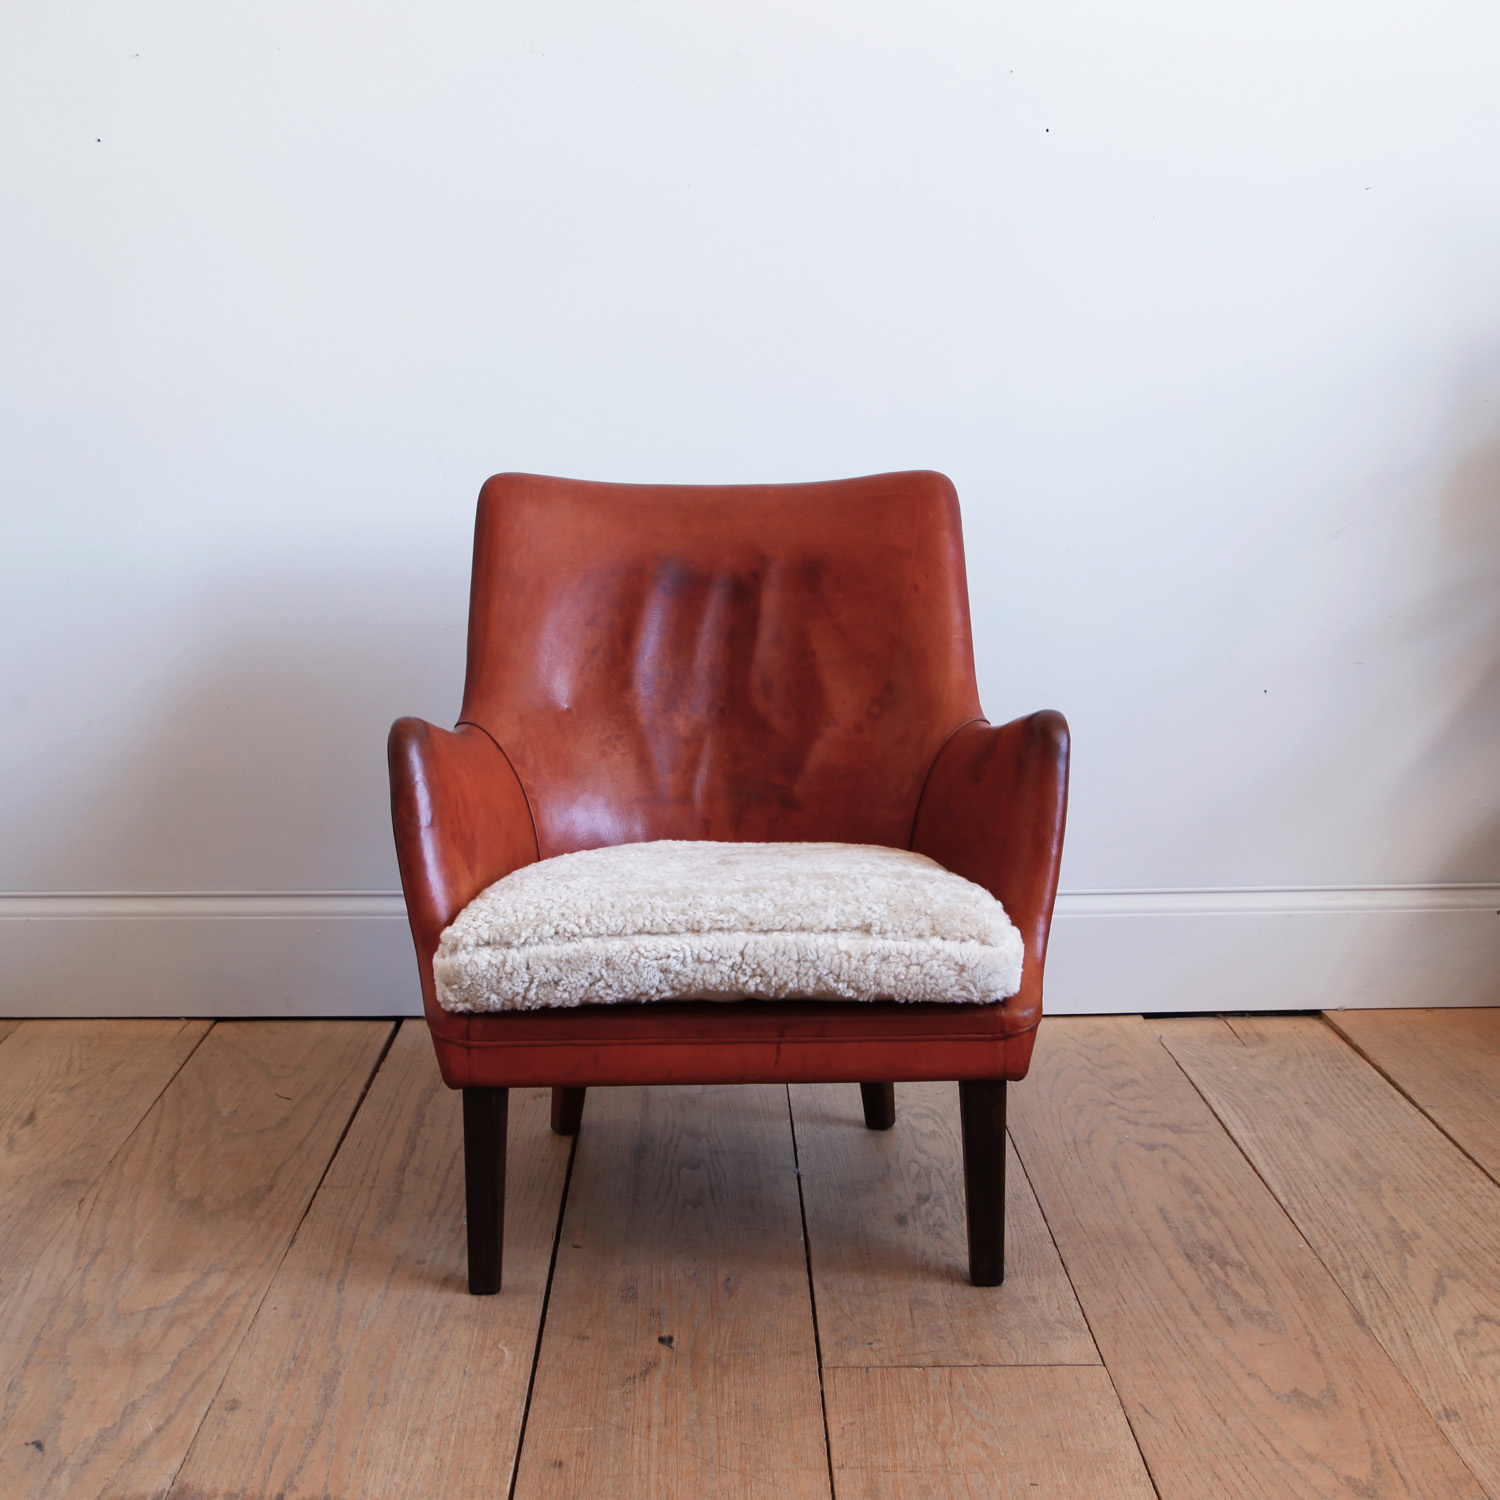 AV 53 Lounge Chair in Original Leather by Arne Vodder